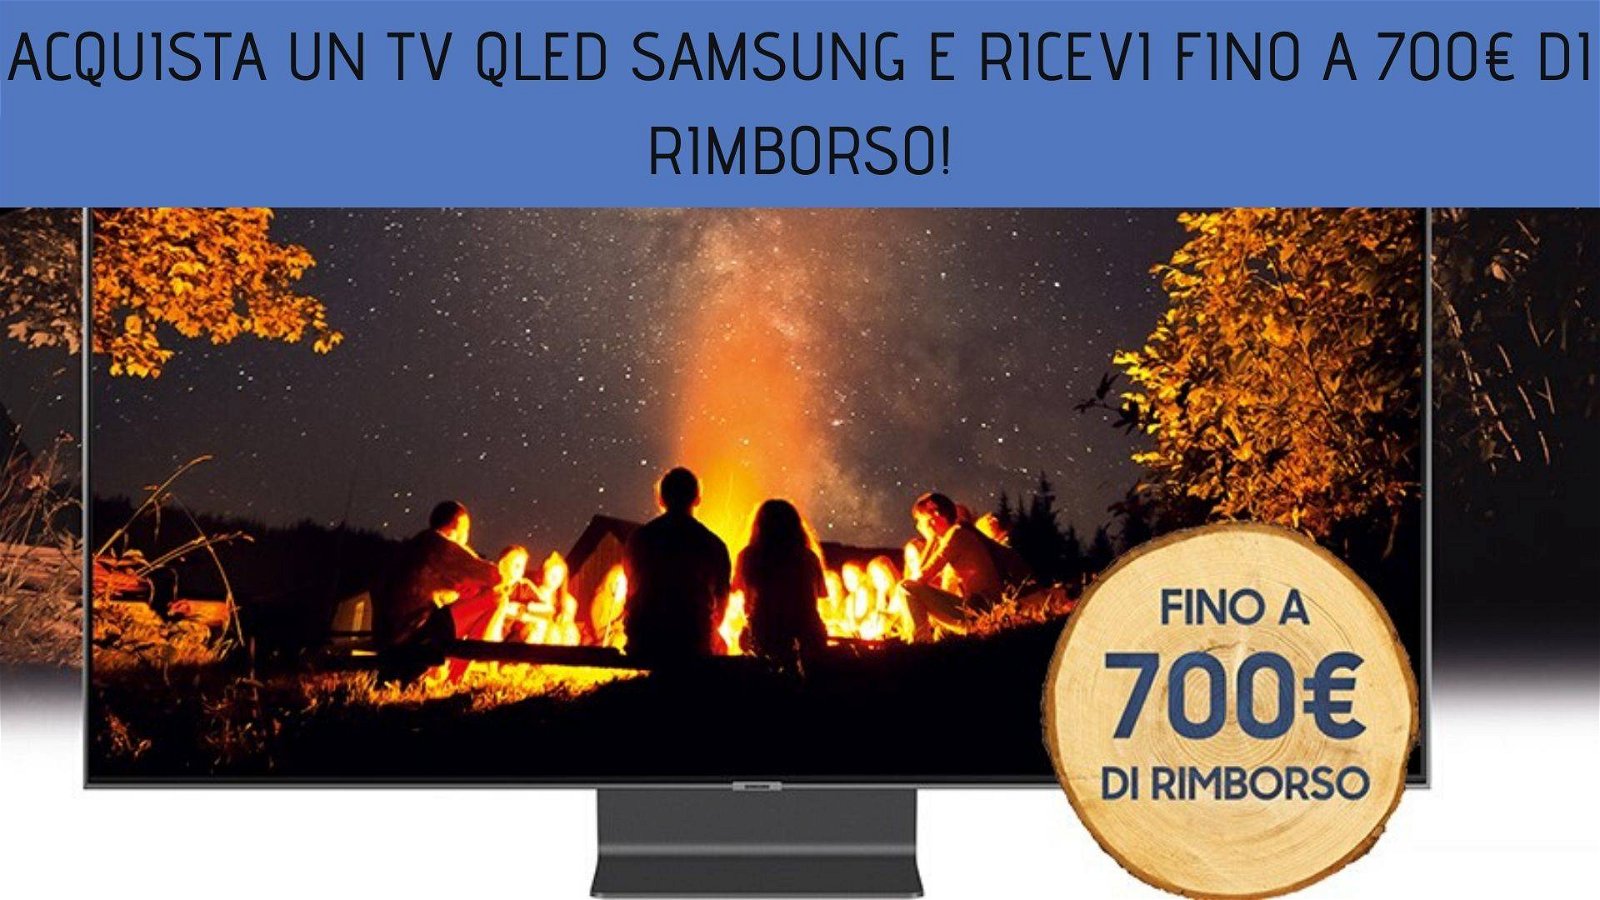 Immagine di Acquista un TV QLED Samsung e ricevi fino a 700€ di rimborso!